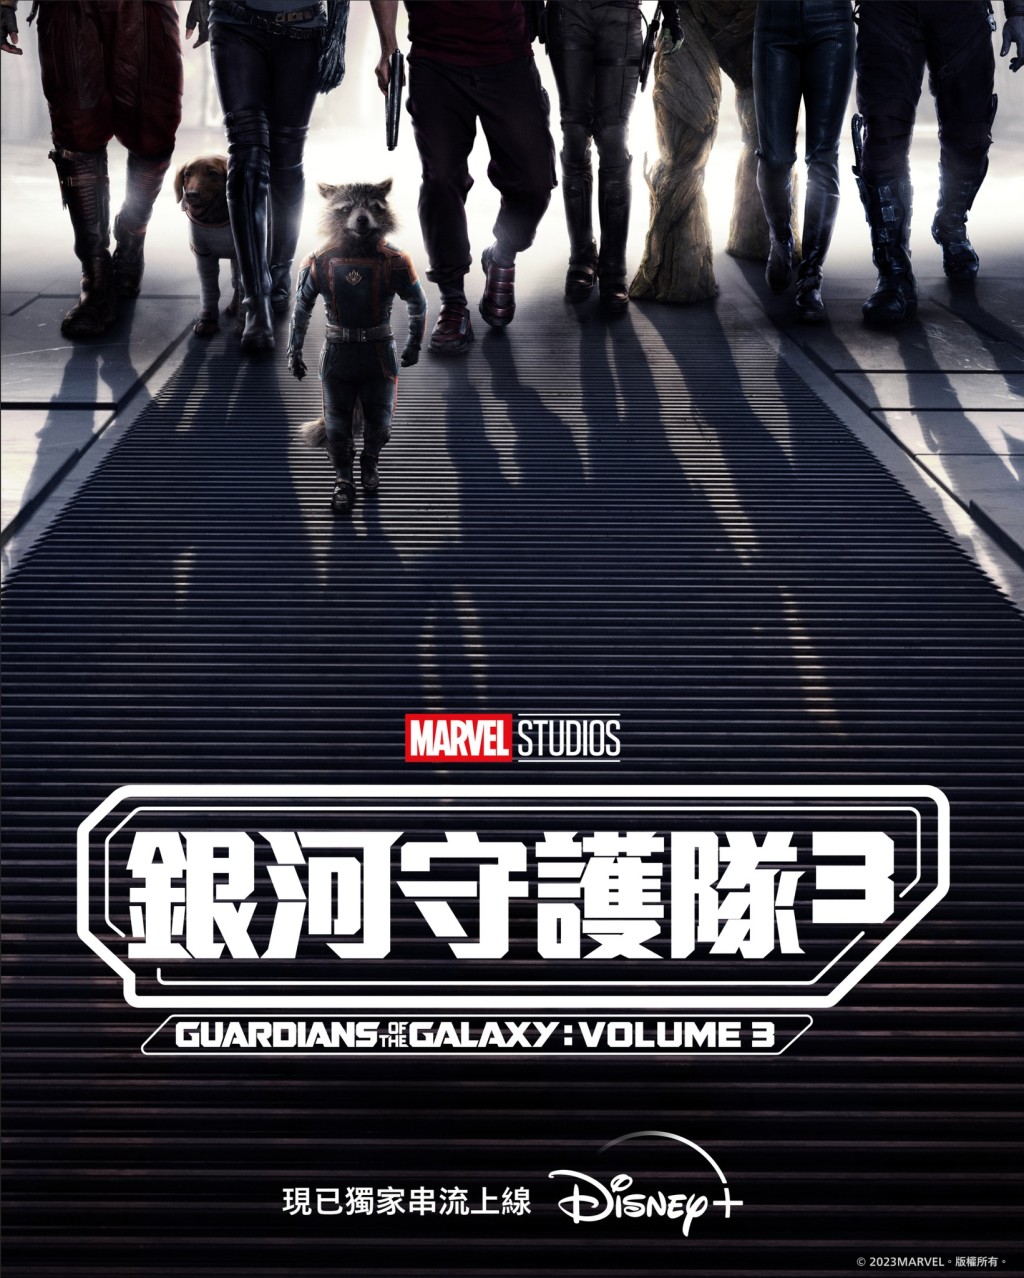 《银河守护队3》（Guardians of the Galaxy Vol. 3）由导演James Gunn执导，堪称Marvel Studios非一般超级英雄系列完美最终章，亦是James Gunn转投DC前的最后一部Marvel 作品。（图片来源：Disney+）